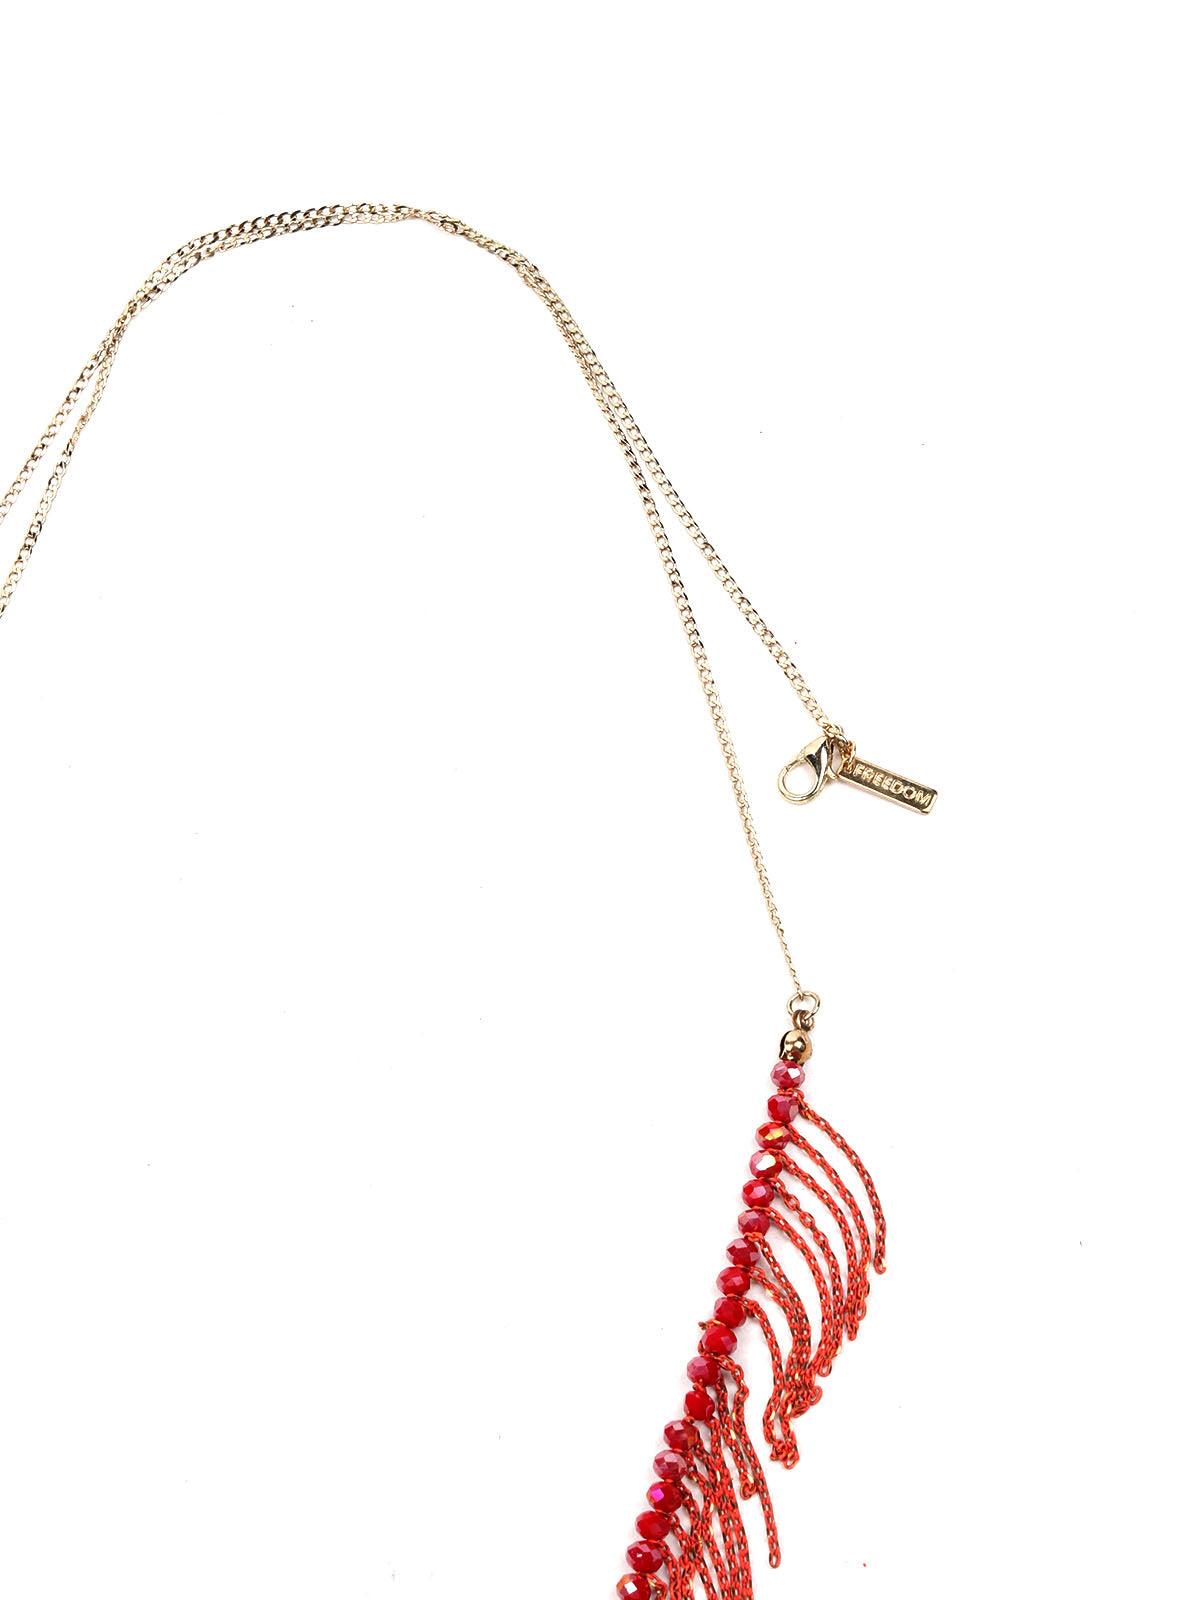 Red beaded necklace with fringes design detailing - Odette